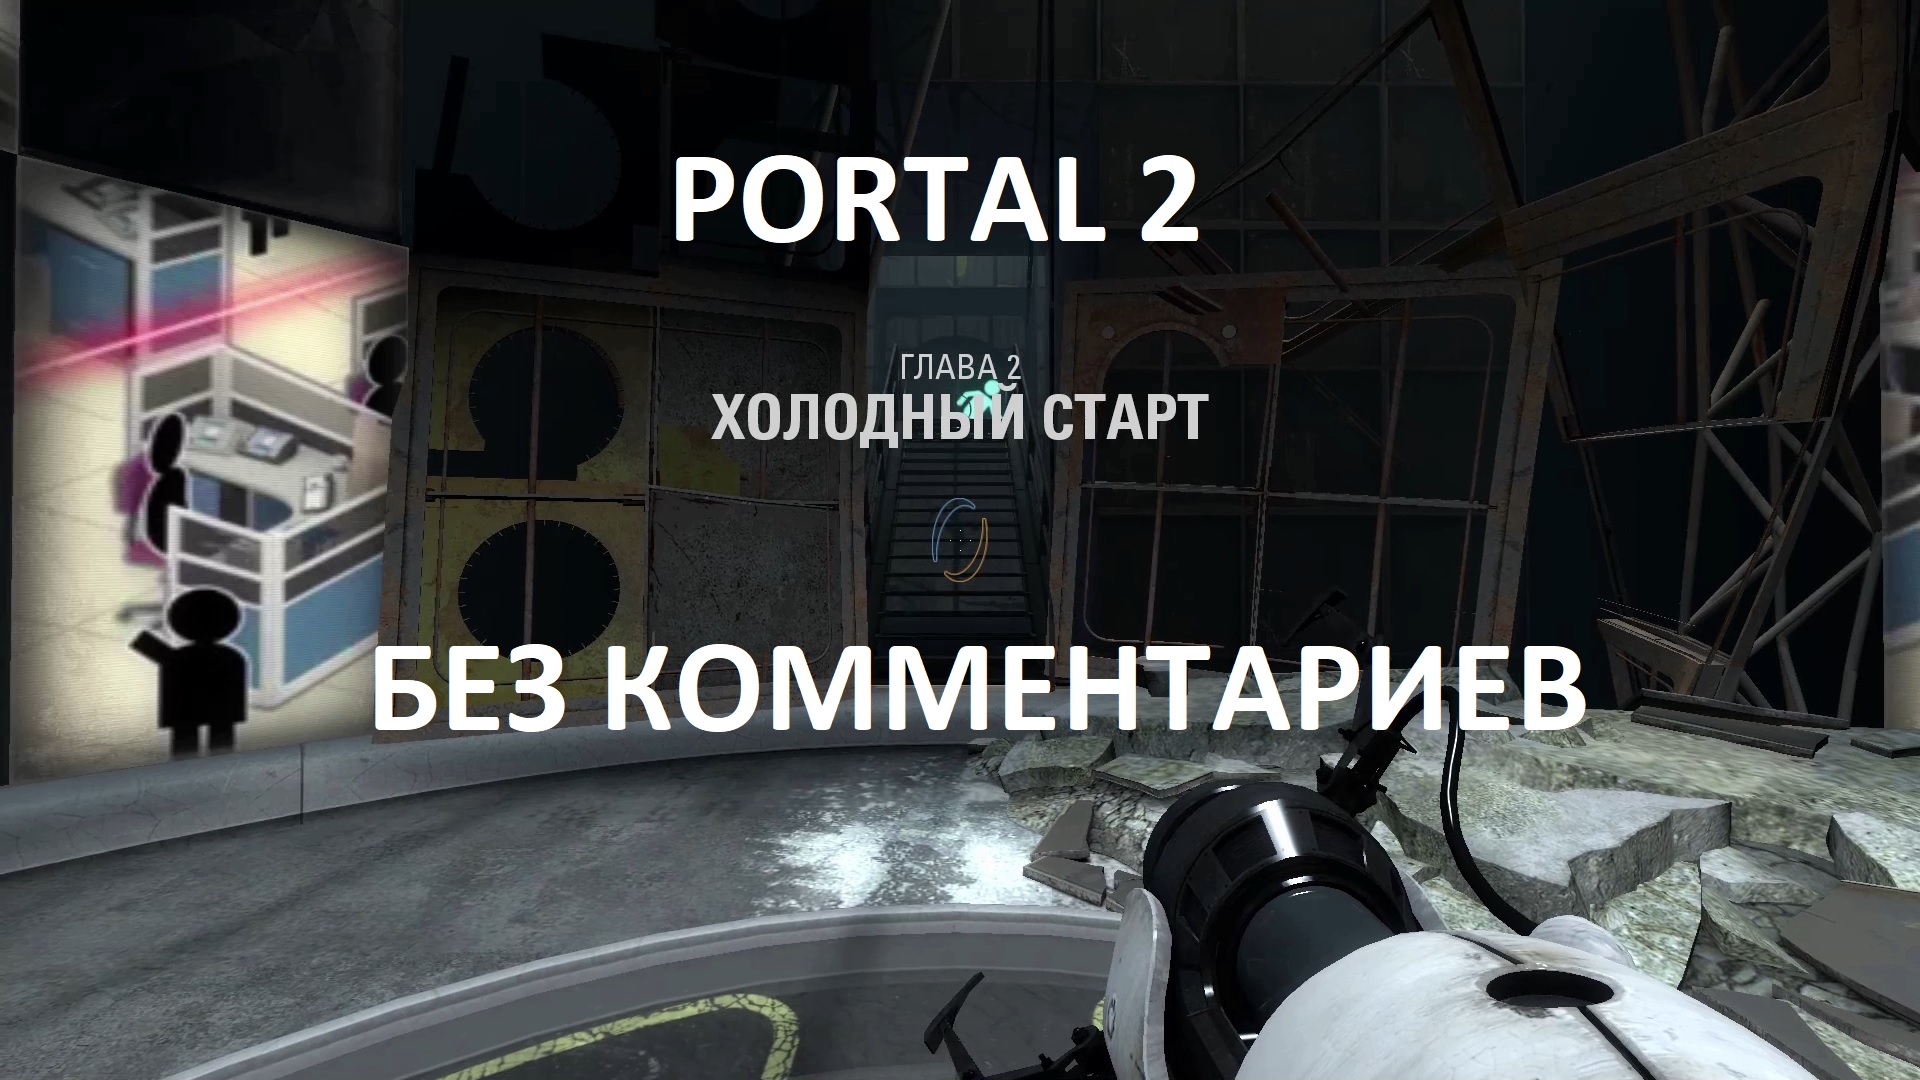 Portal 2 кооператив главы фото 27